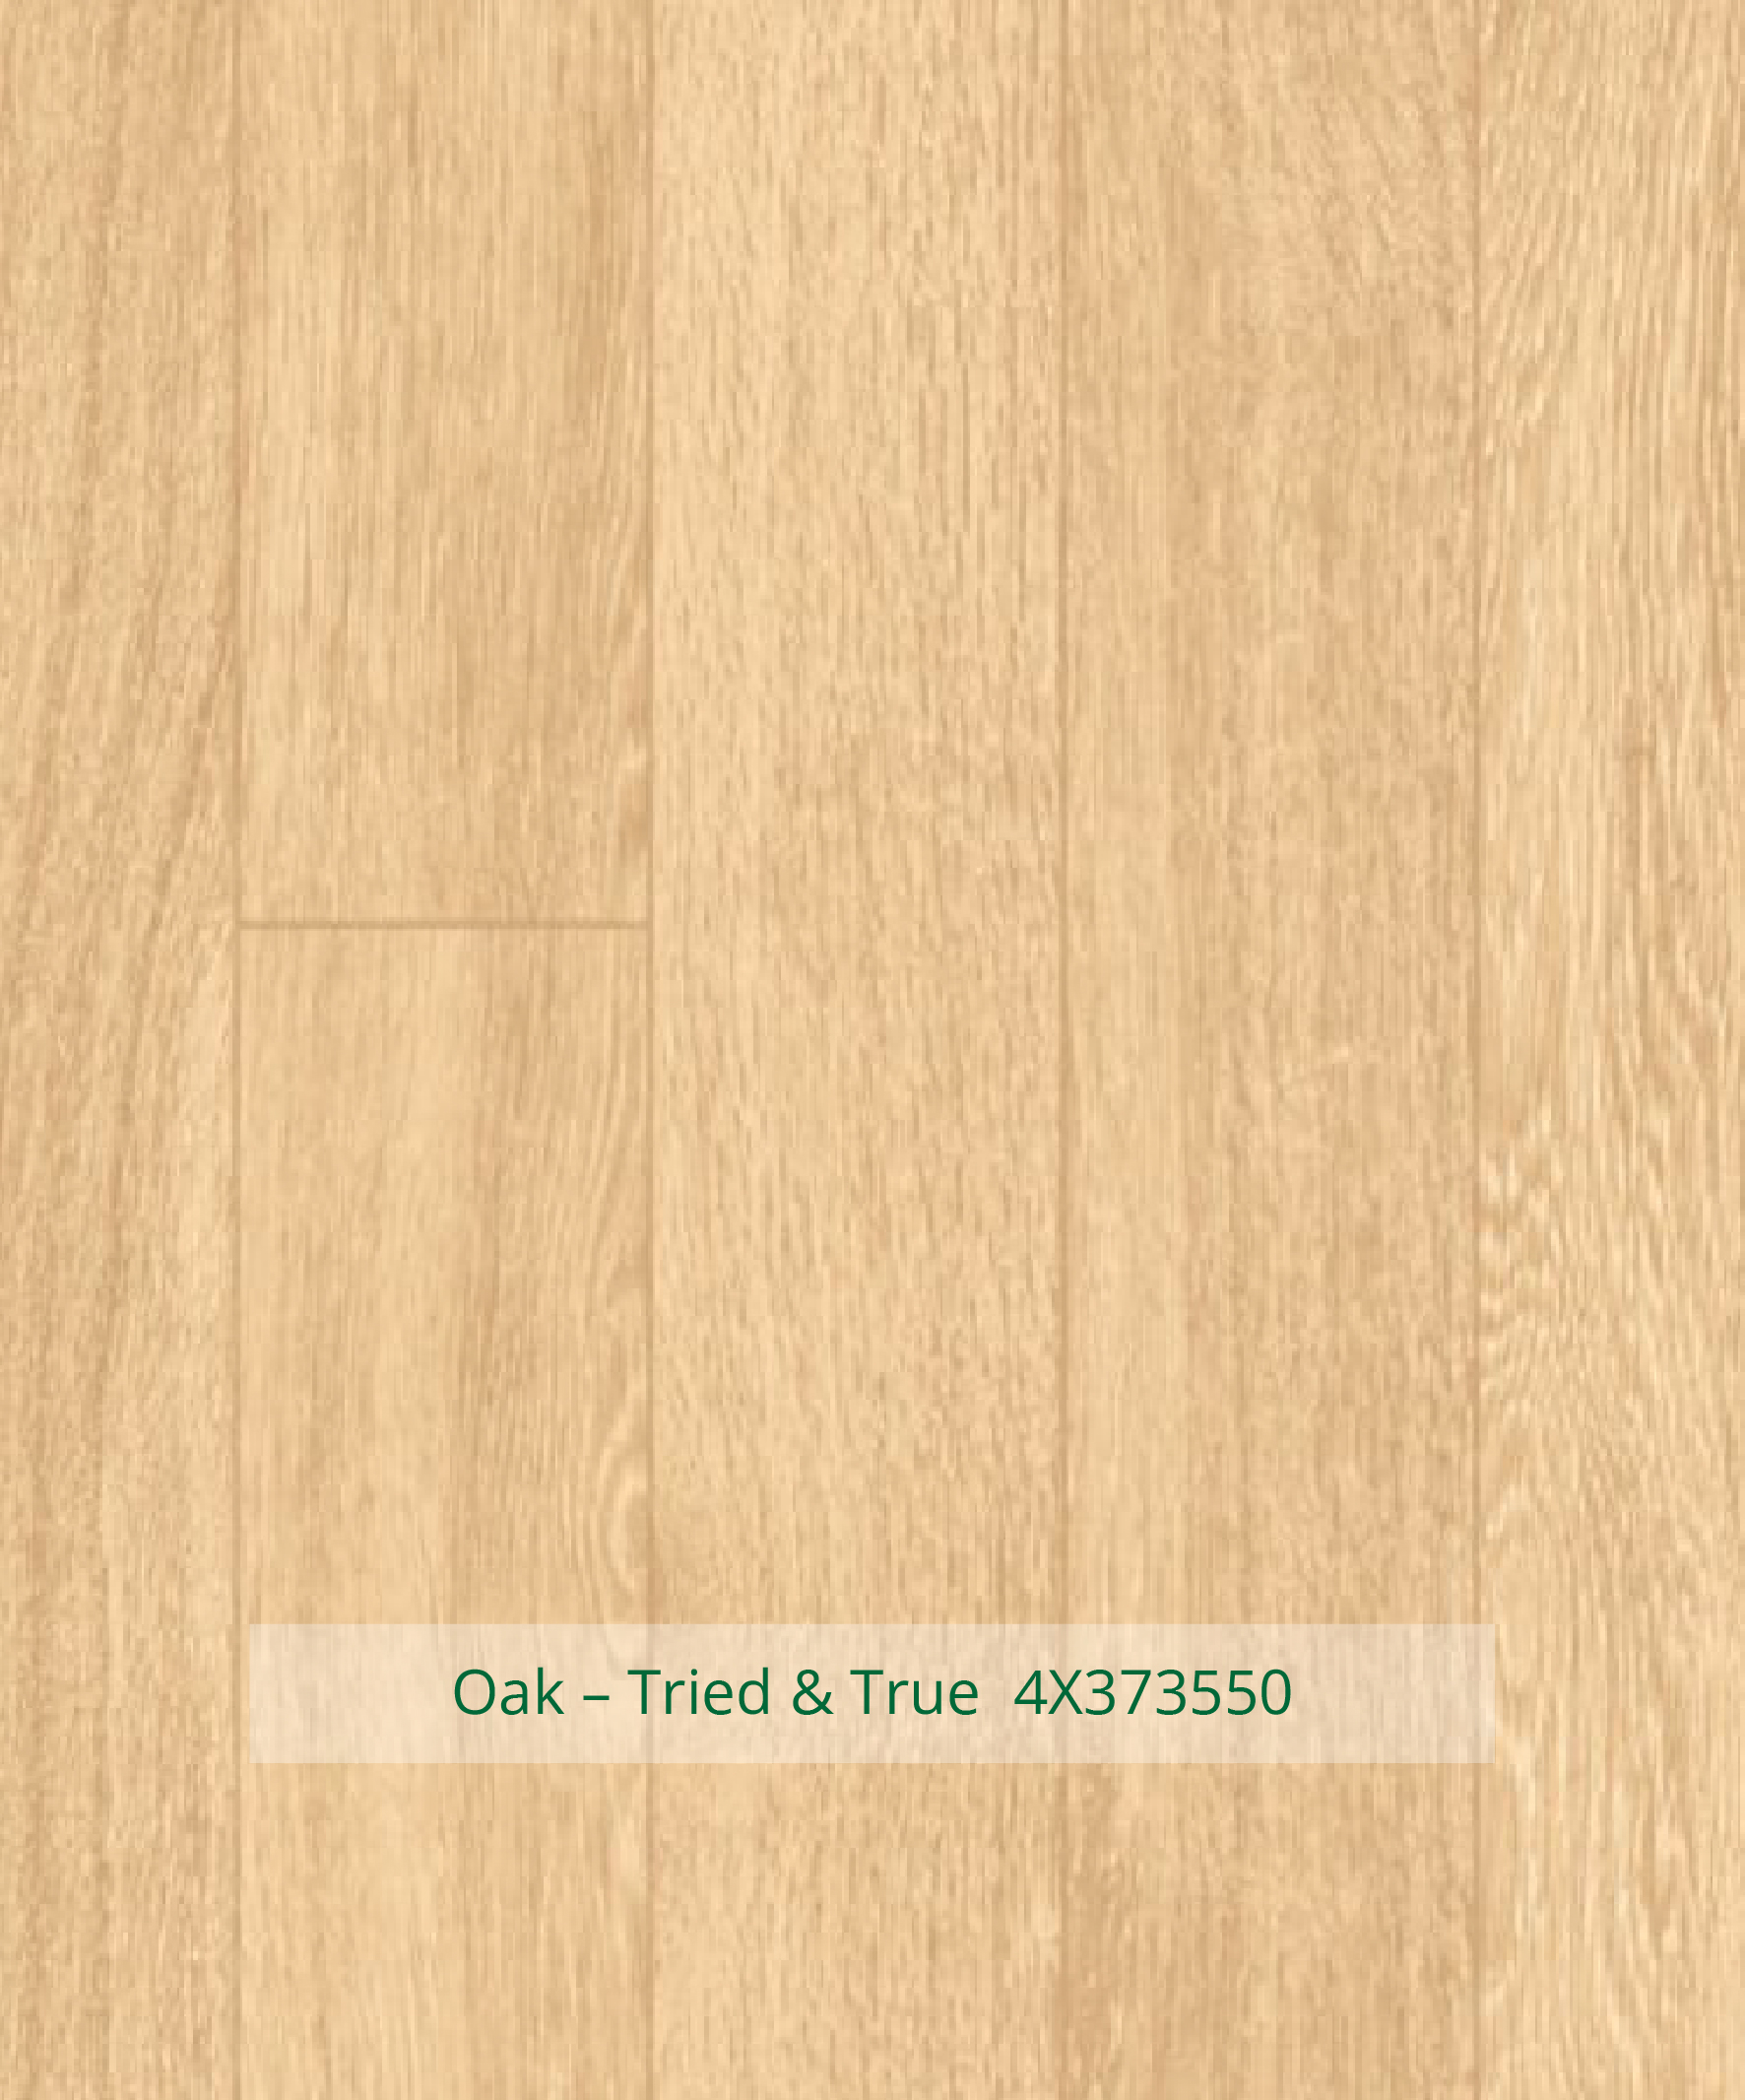 Timberline Oak Tried True 4X373550